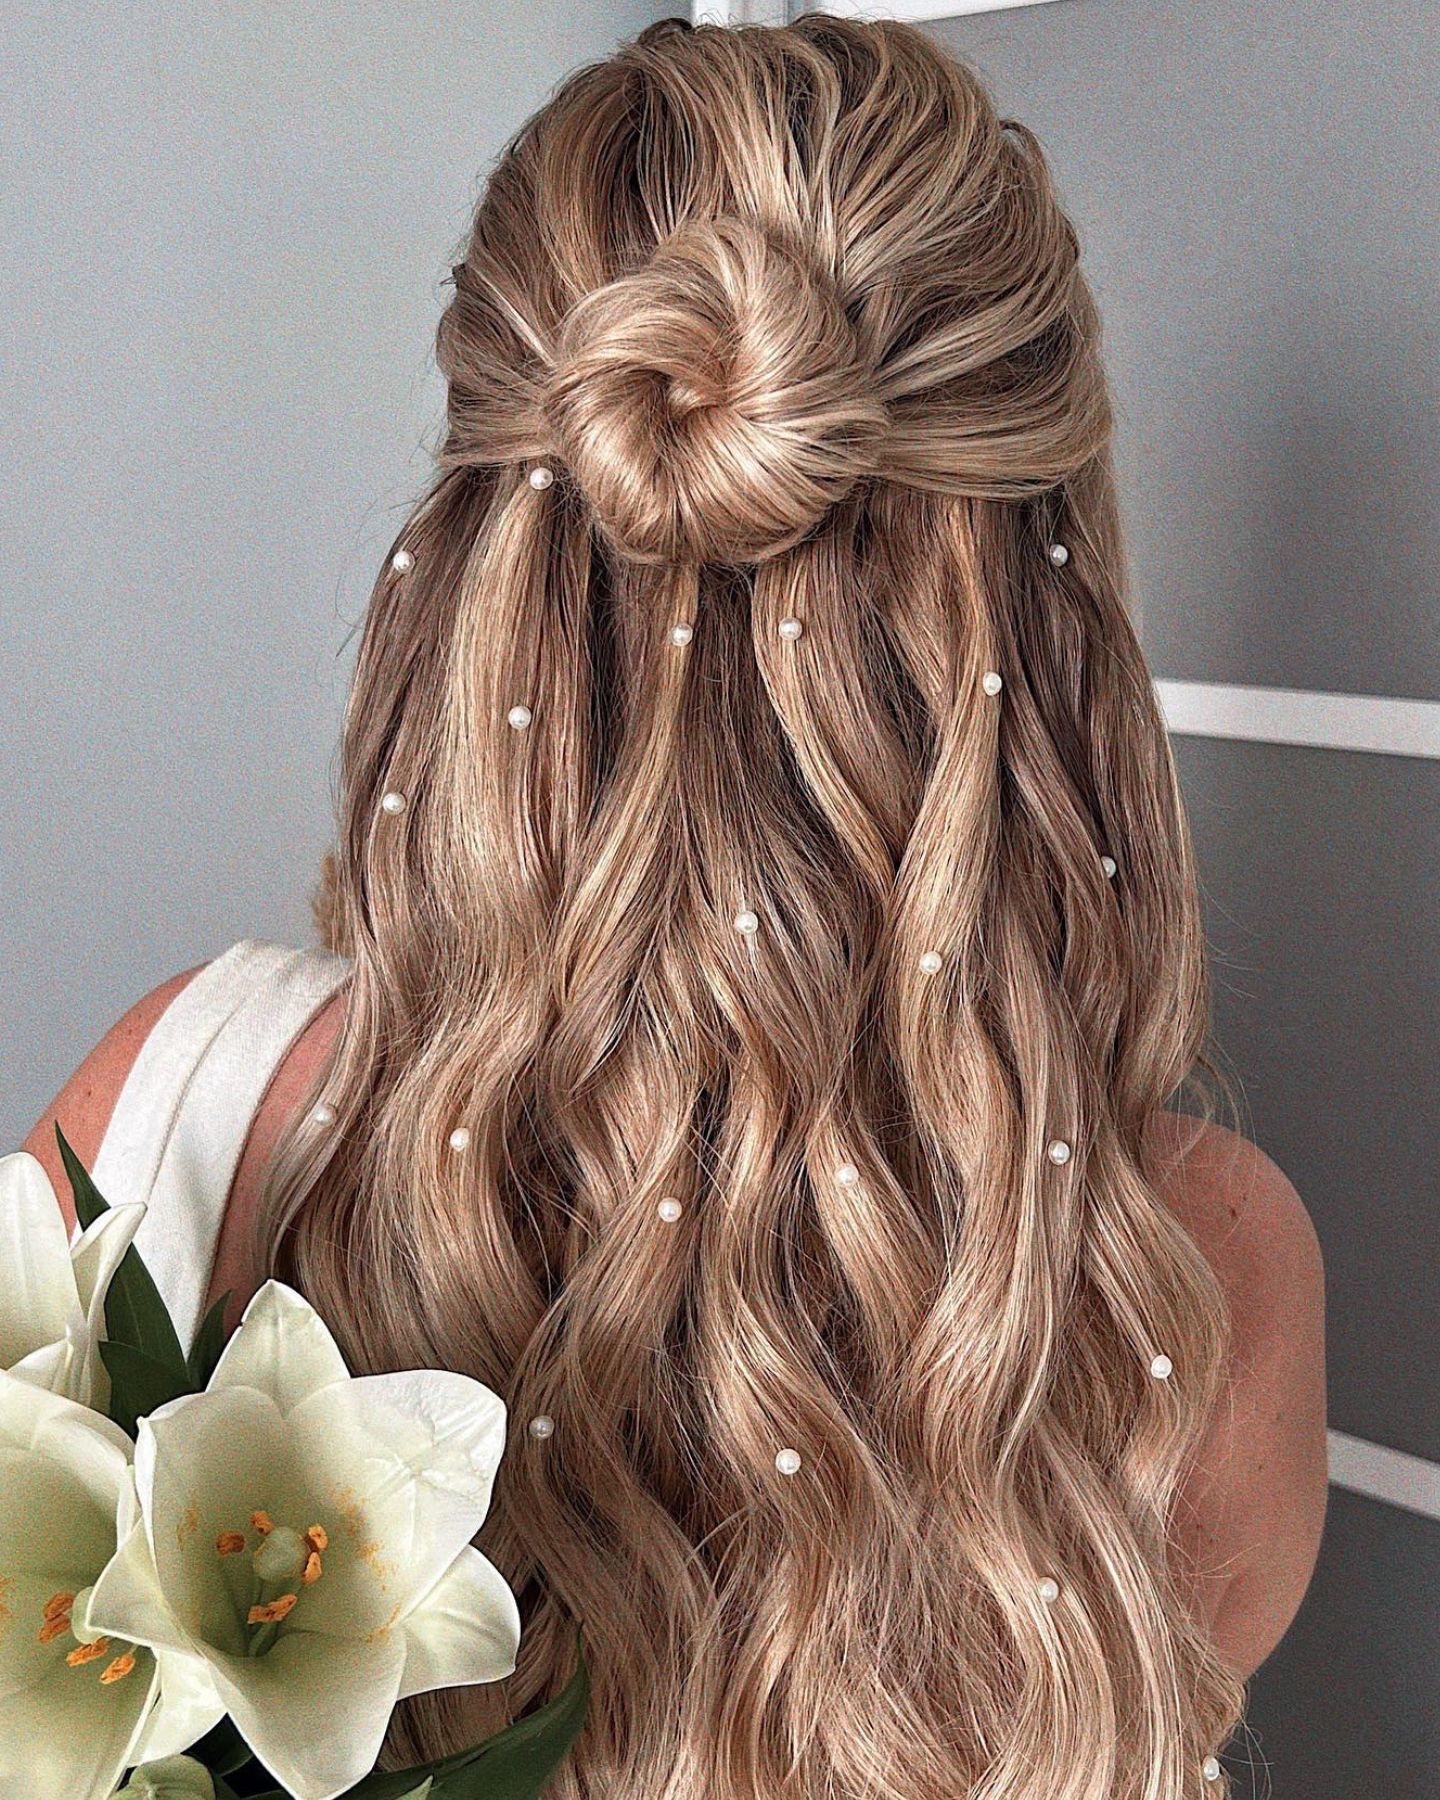 peinados para pelo suelto: las mejores ideas si eres invitada a una boda